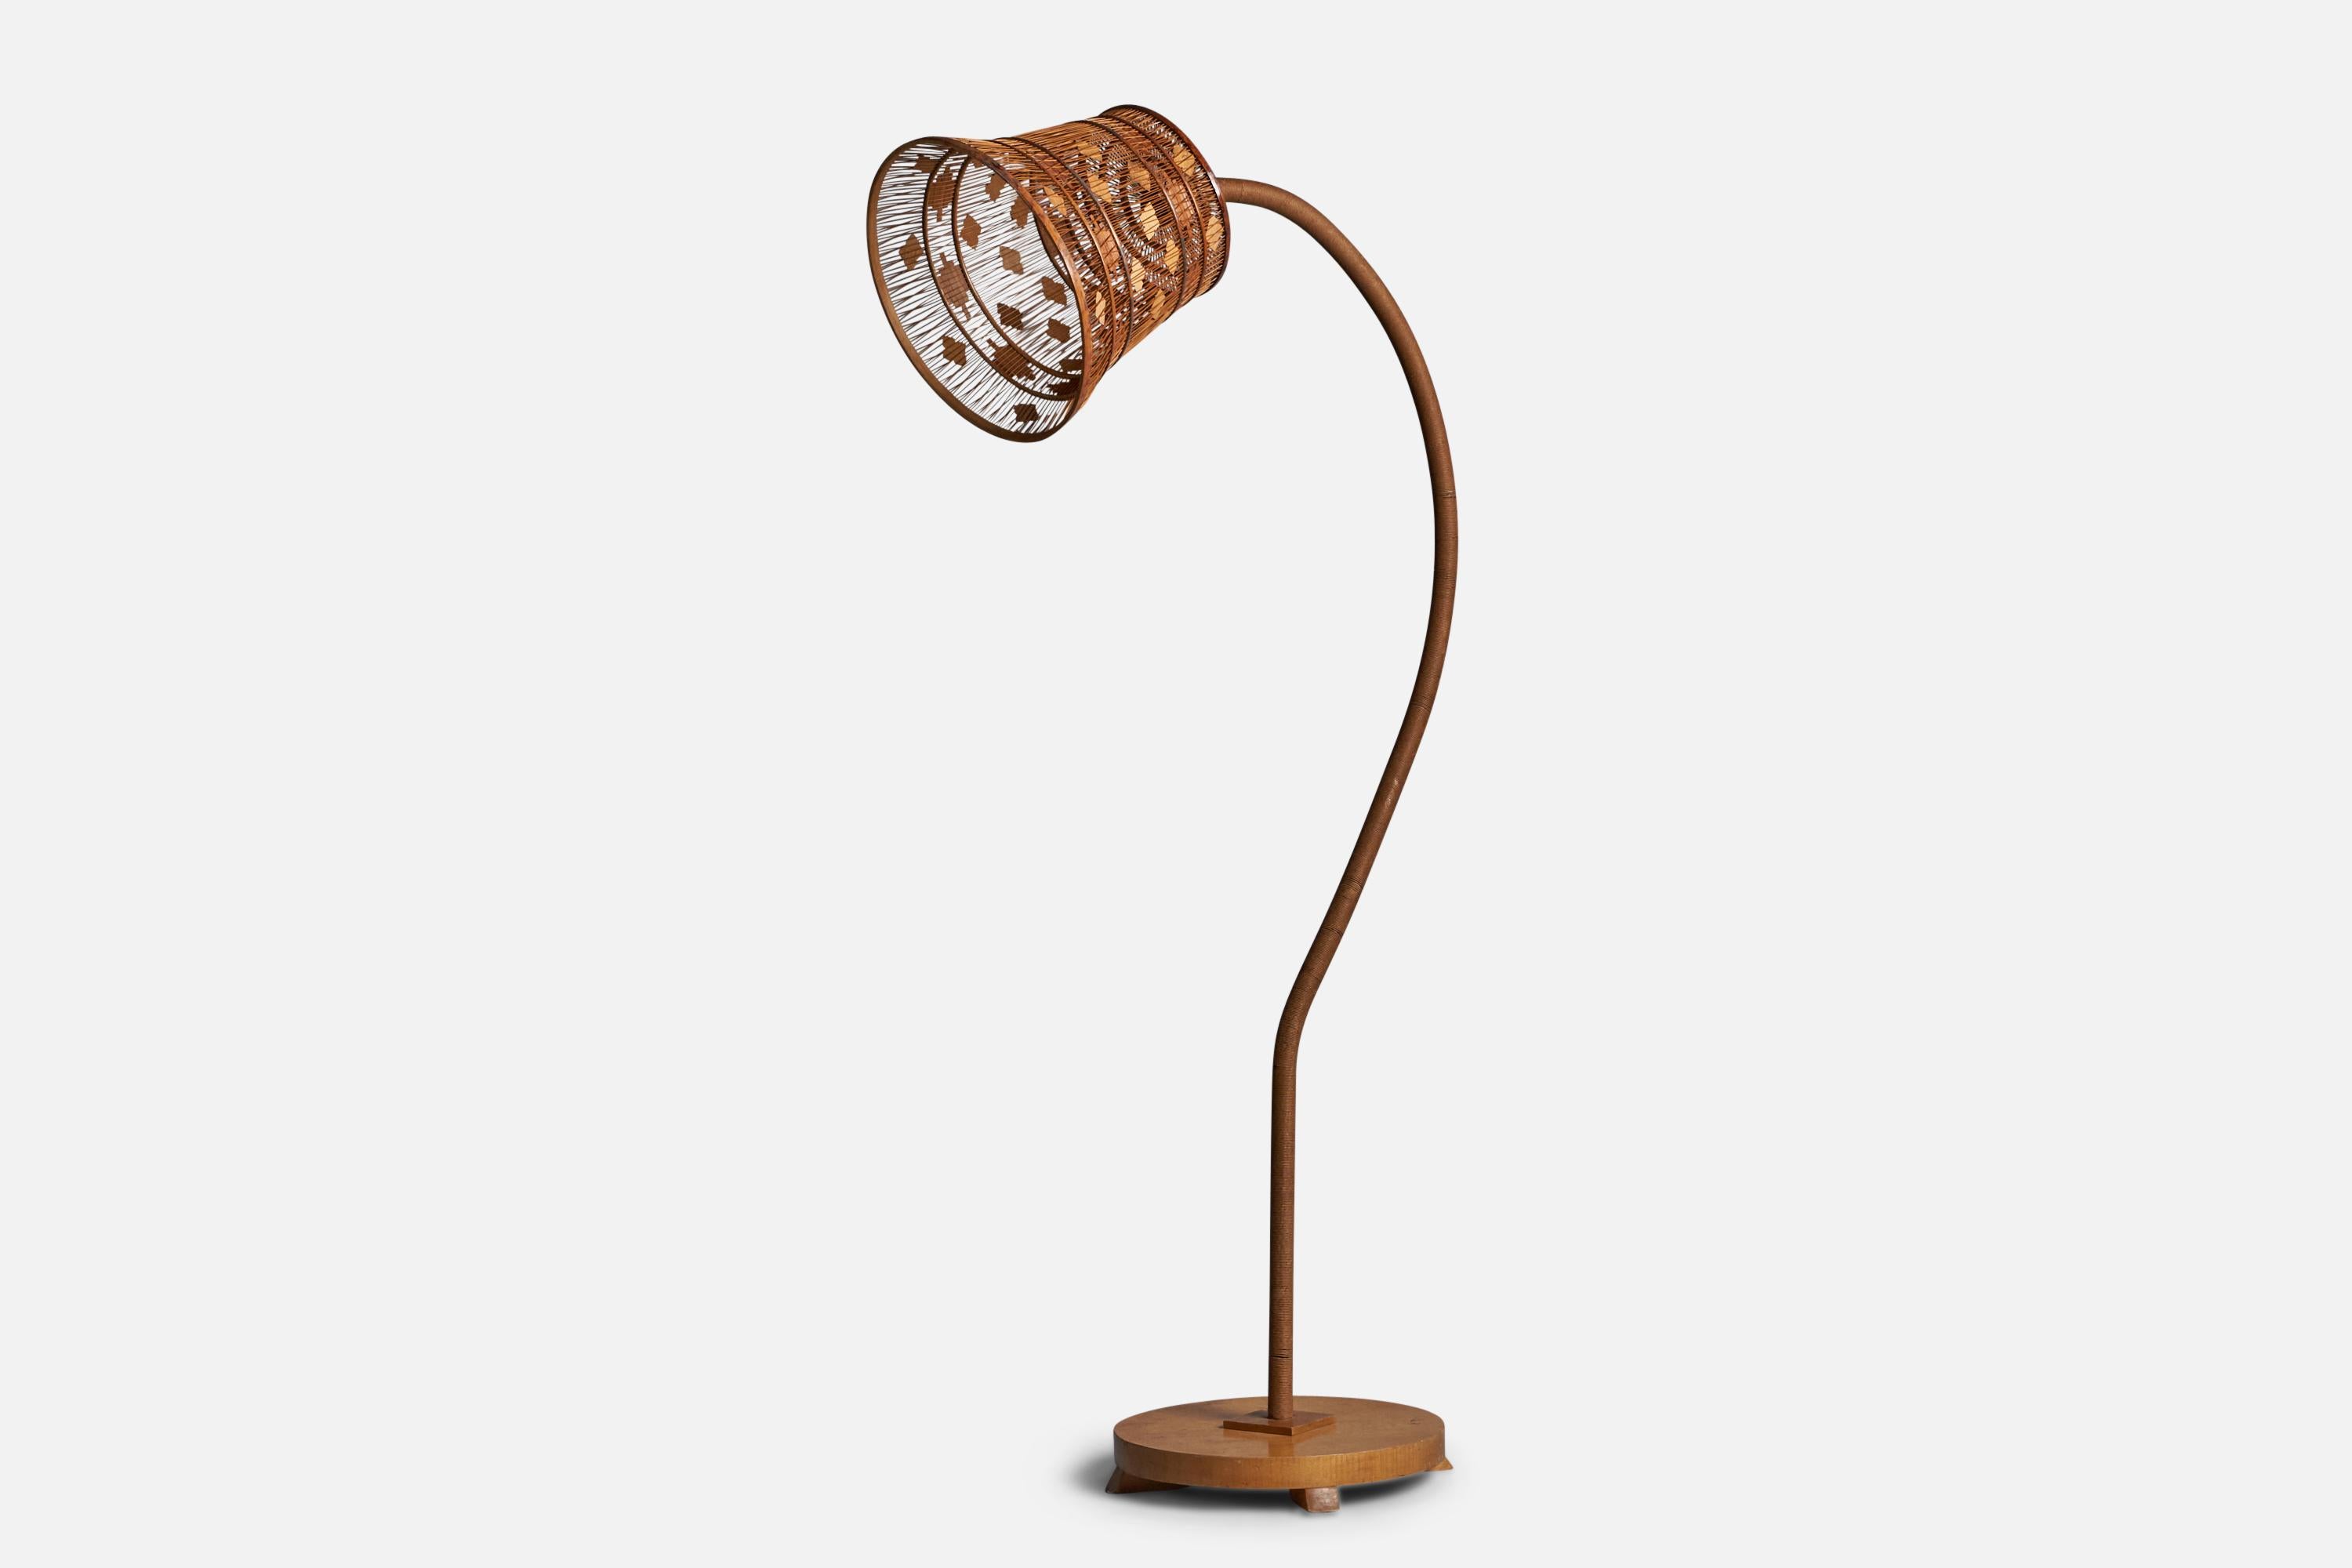 Lampadaire à cordon réglable en orme et en bois, conçu et produit en Suède, années 1930.

Dimensions globales (pouces) : 65